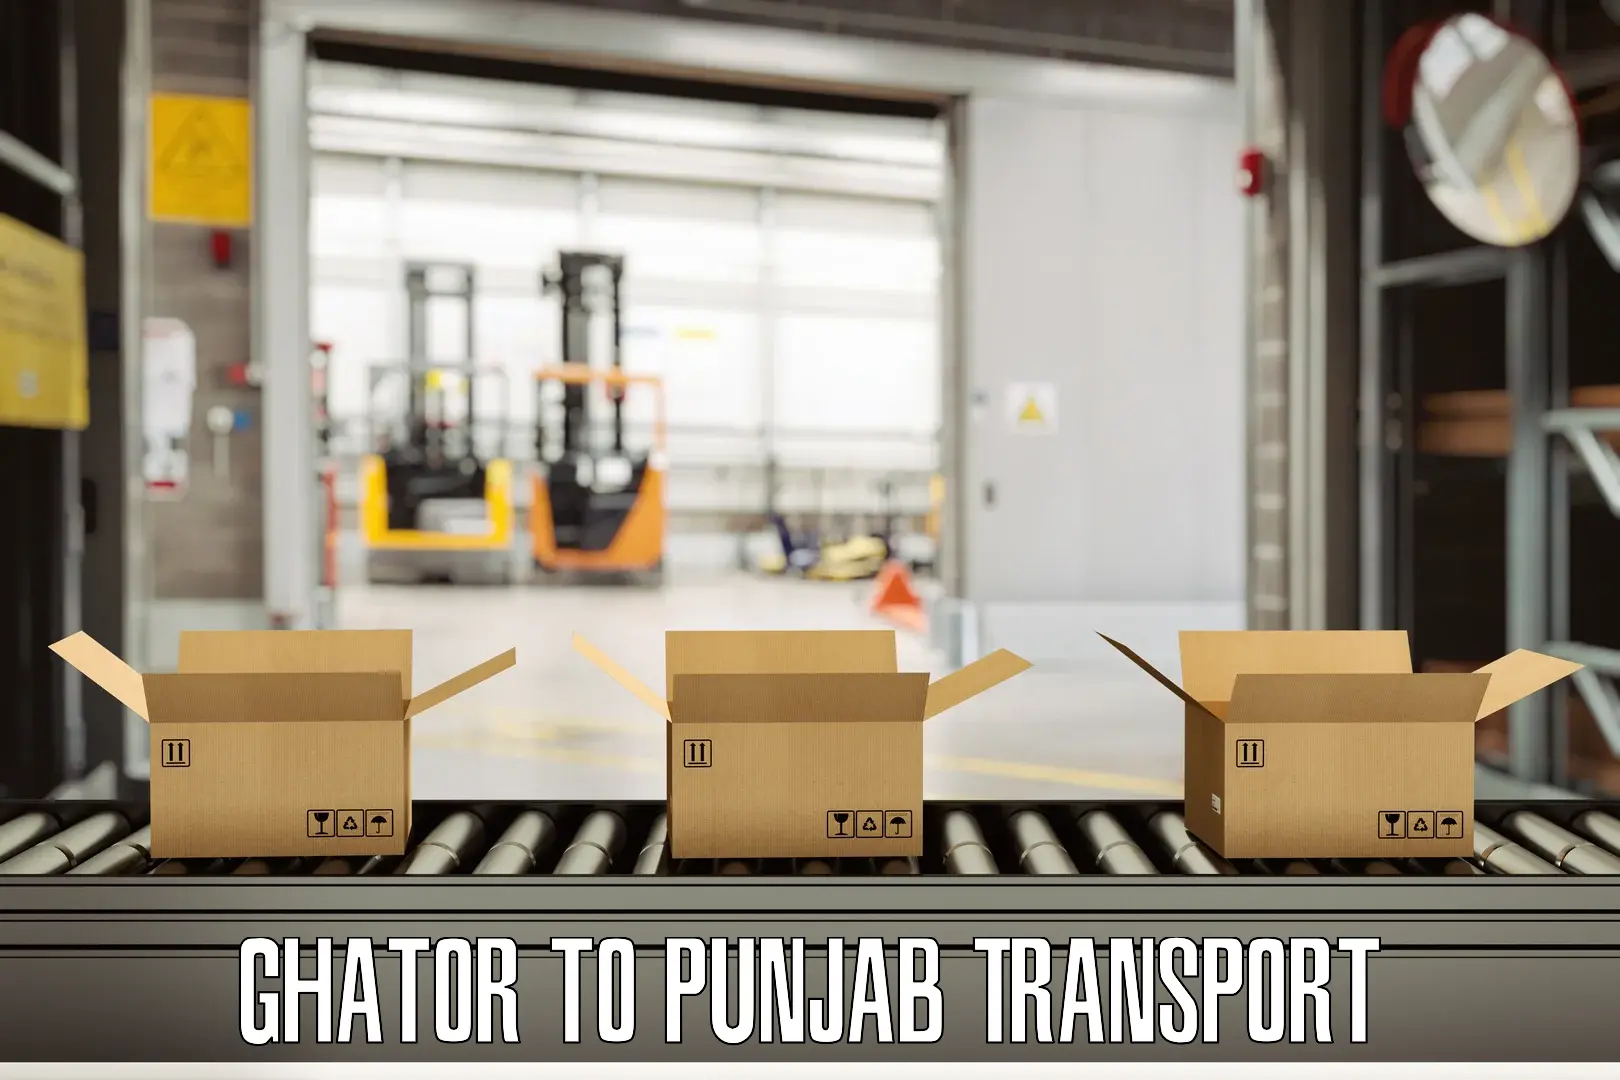 Parcel transport services Ghator to Punjab